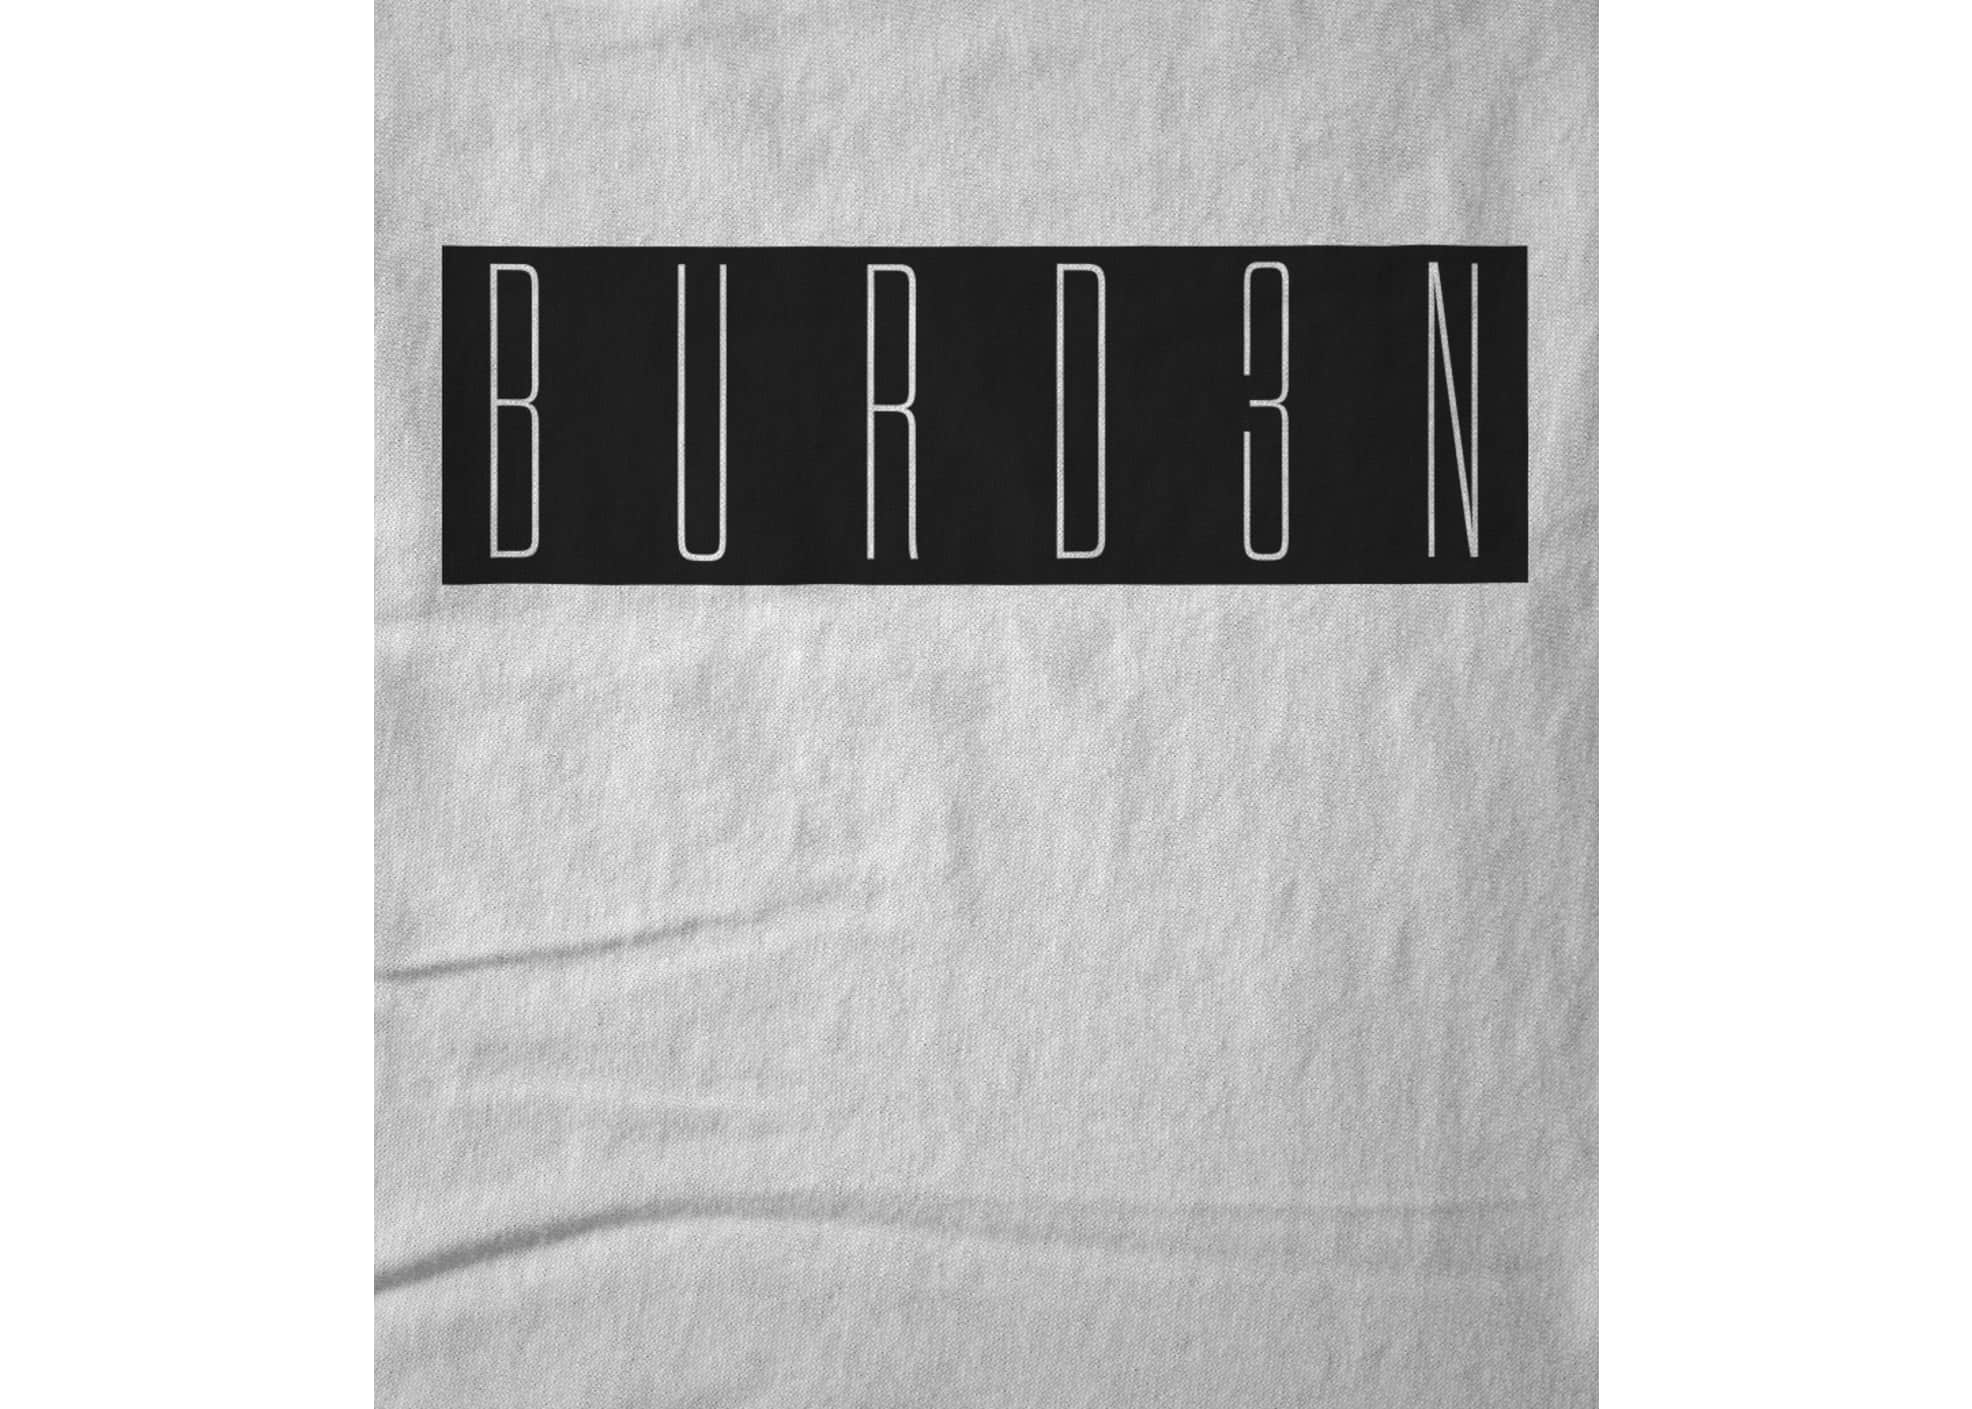 Burden of the sky burd3n   white 1585955371